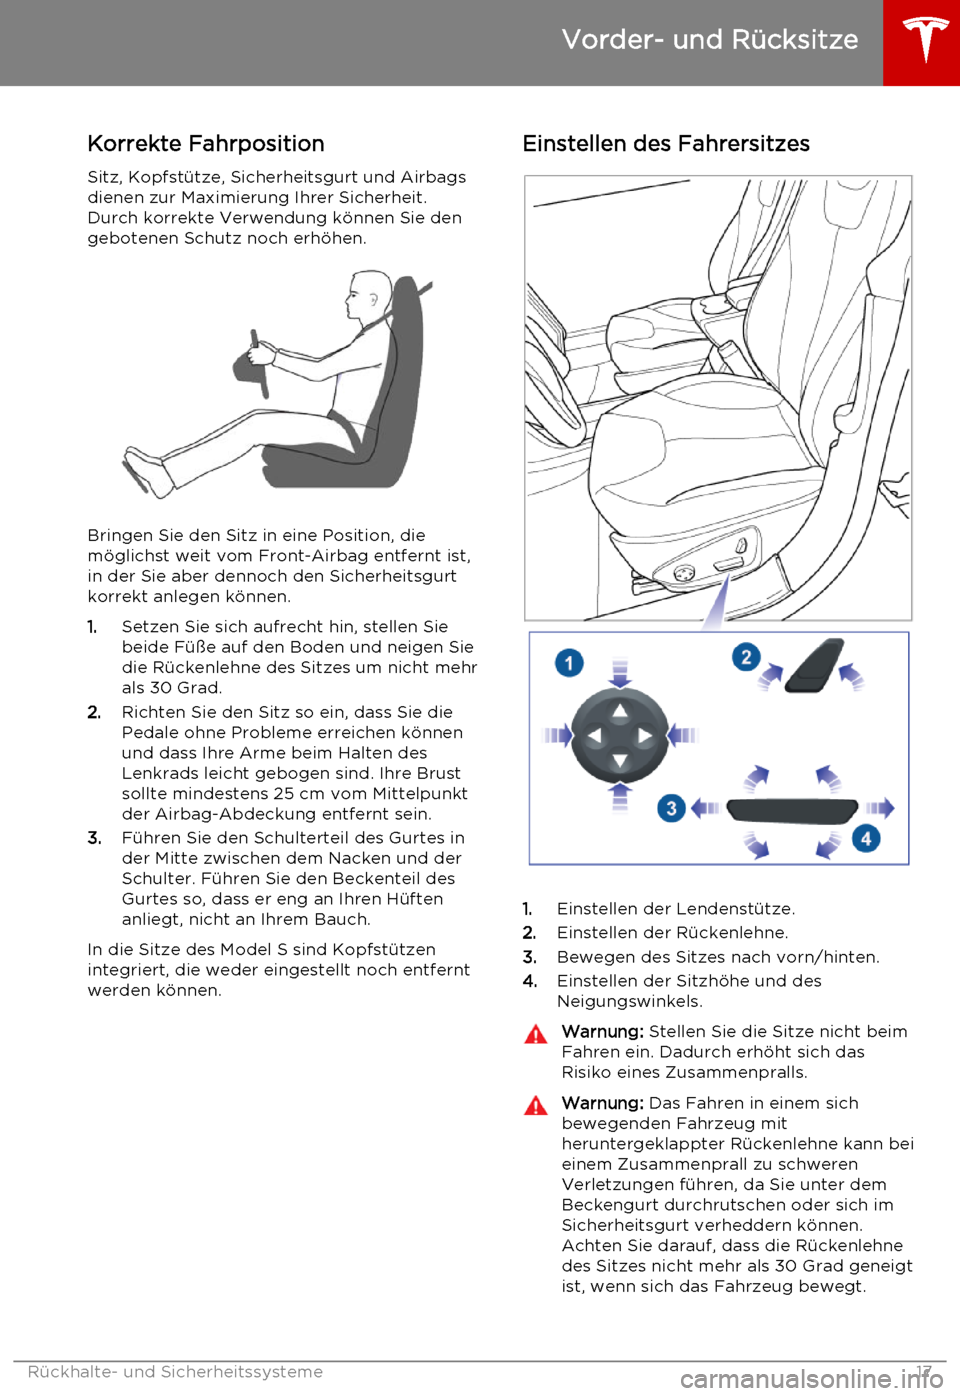 TESLA MODEL S 2015  Betriebsanleitung (in German) Korrekte Fahrposition
Sitz, Kopfstütze, Sicherheitsgurt und Airbags dienen zur Maximierung Ihrer Sicherheit.
Durch korrekte Verwendung können Sie den gebotenen Schutz noch erhöhen.
Bringen Sie den 